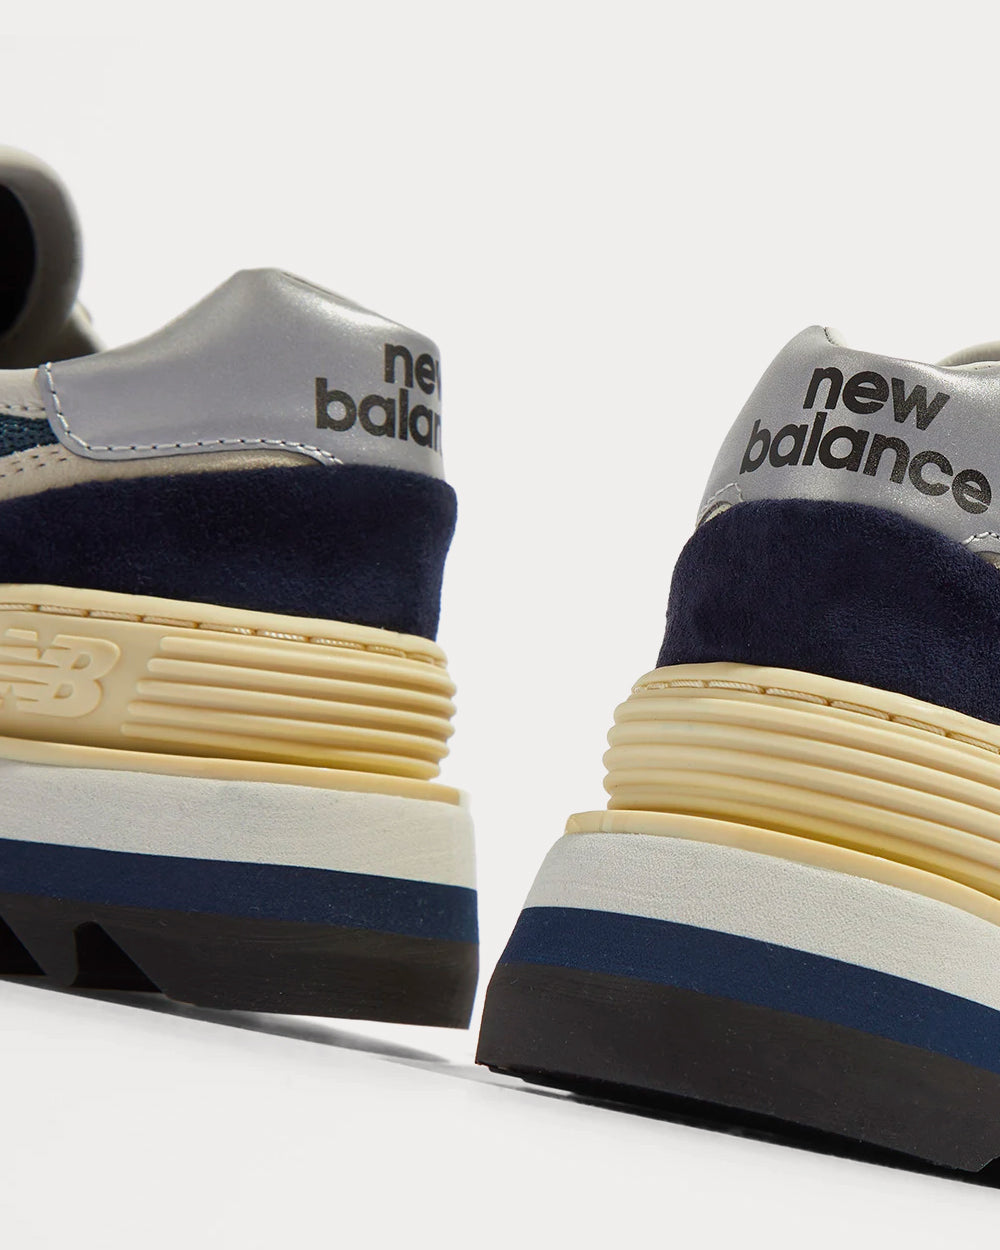 New Balance Tokyo Design Studio 574 Navy Low Top Sneakers - Sneak in Peace